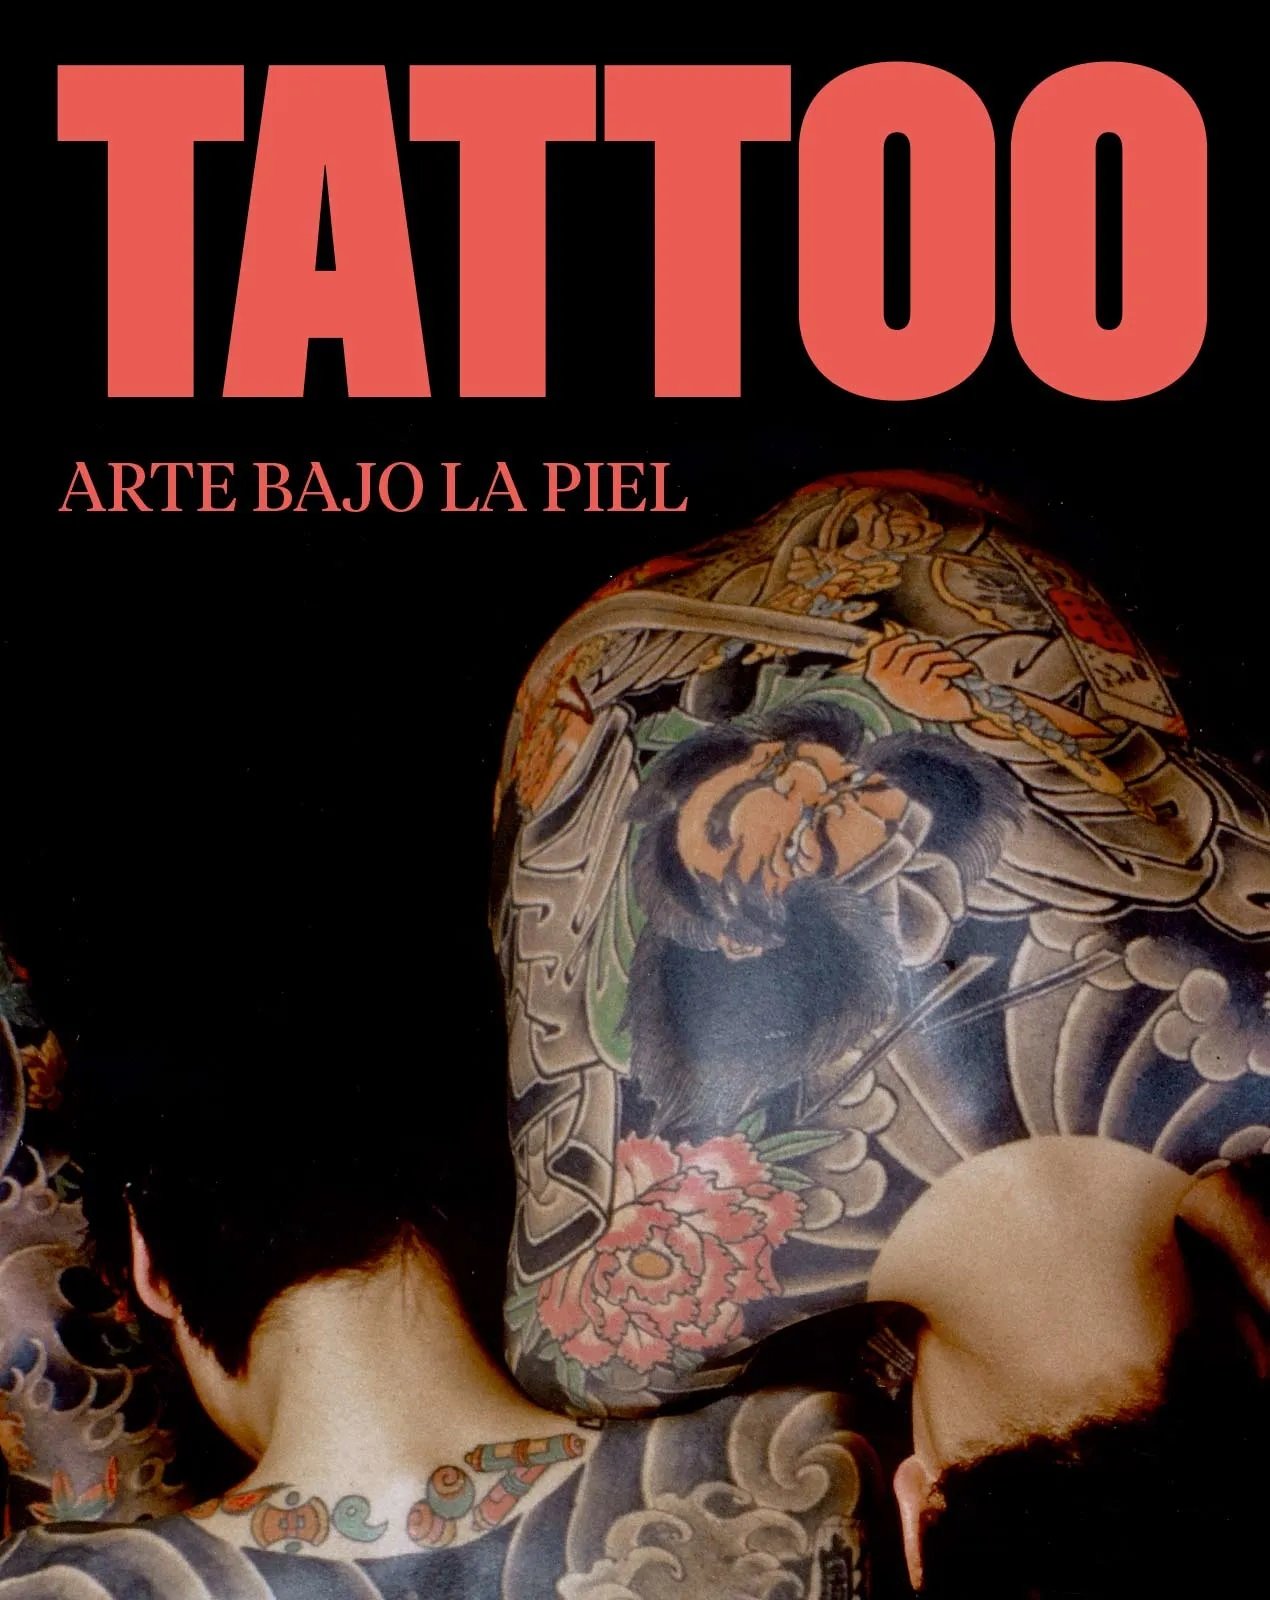 Cartel de la exposición "Tattoo", en el Caixaforum de Madrid.